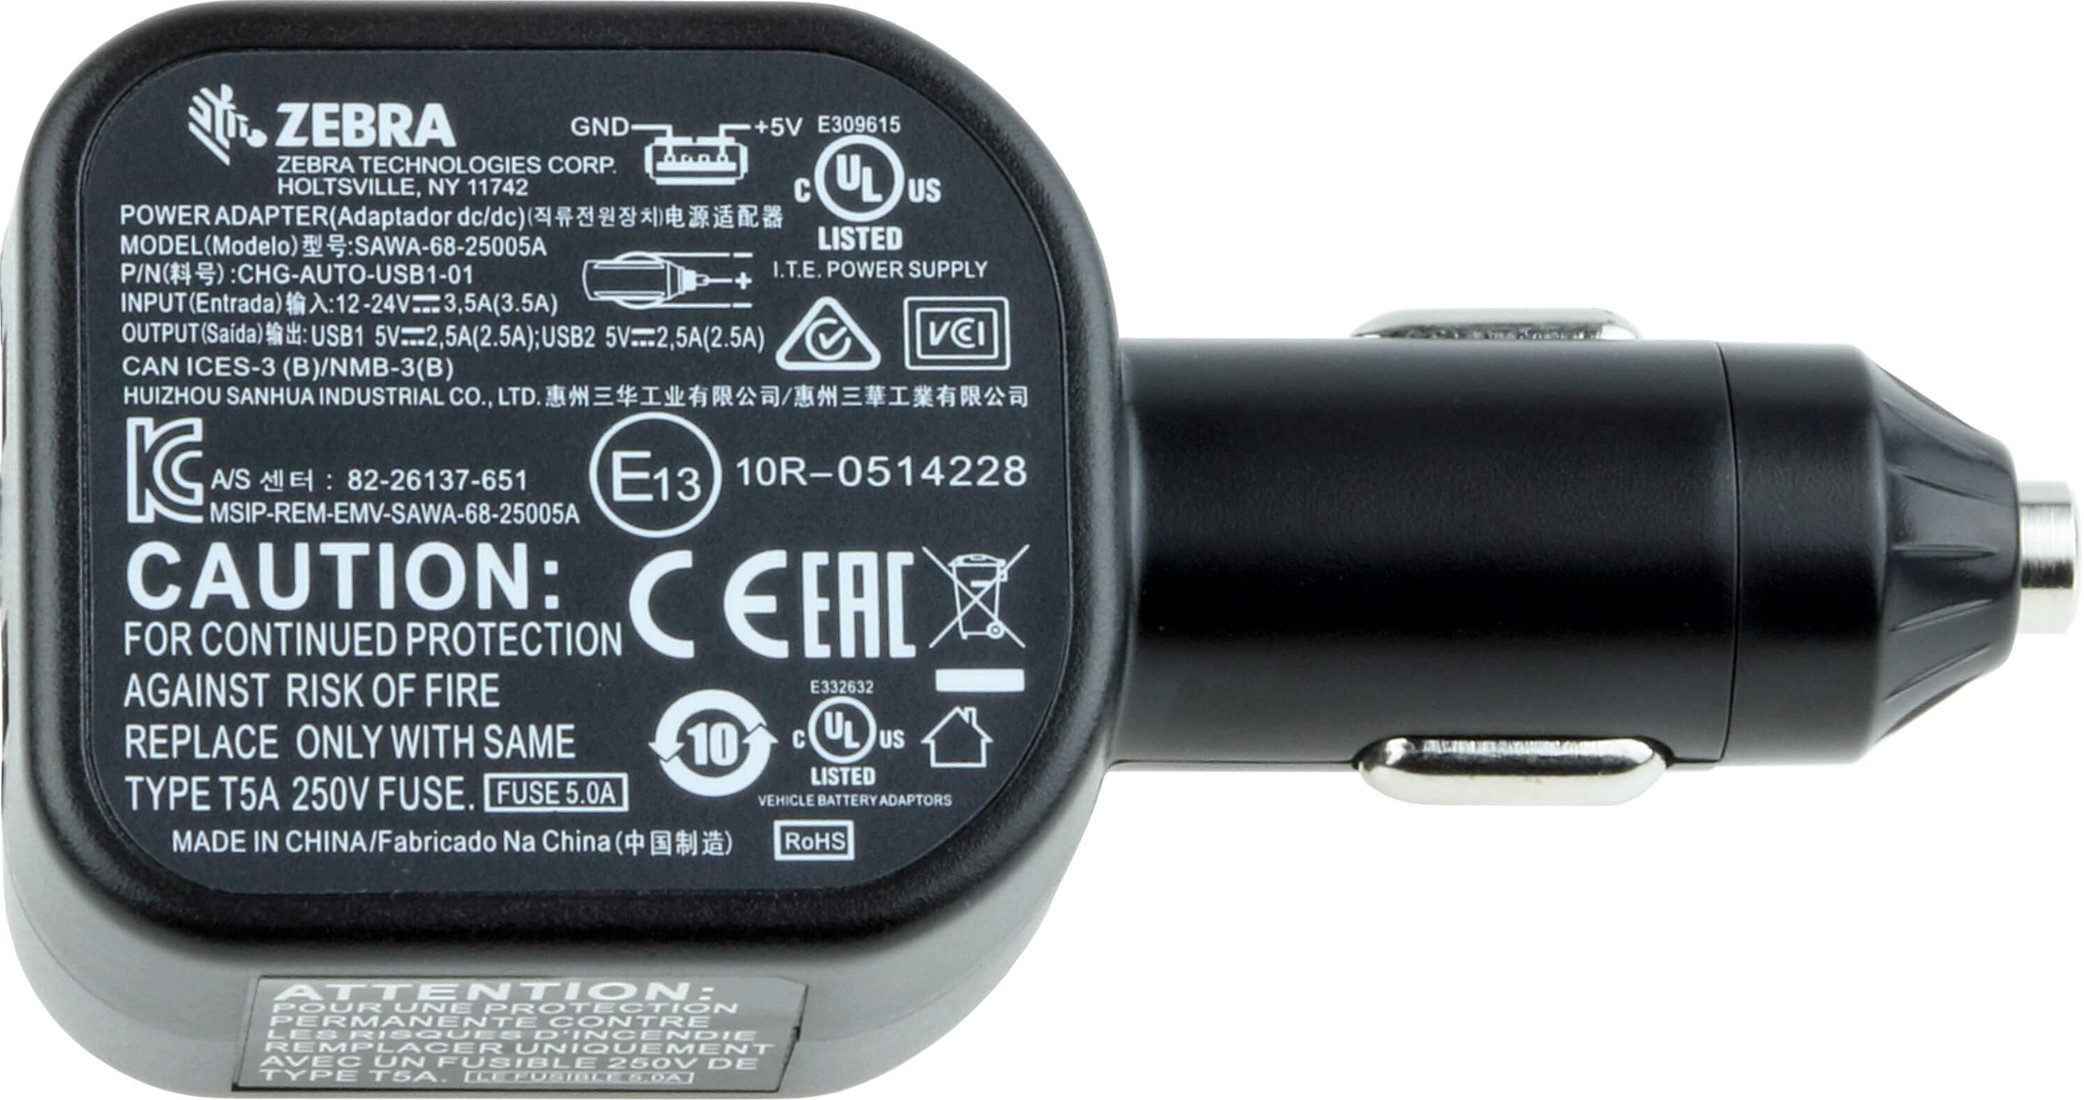 KFZ Adapter USB (2,0 A) - Dampfer Shop